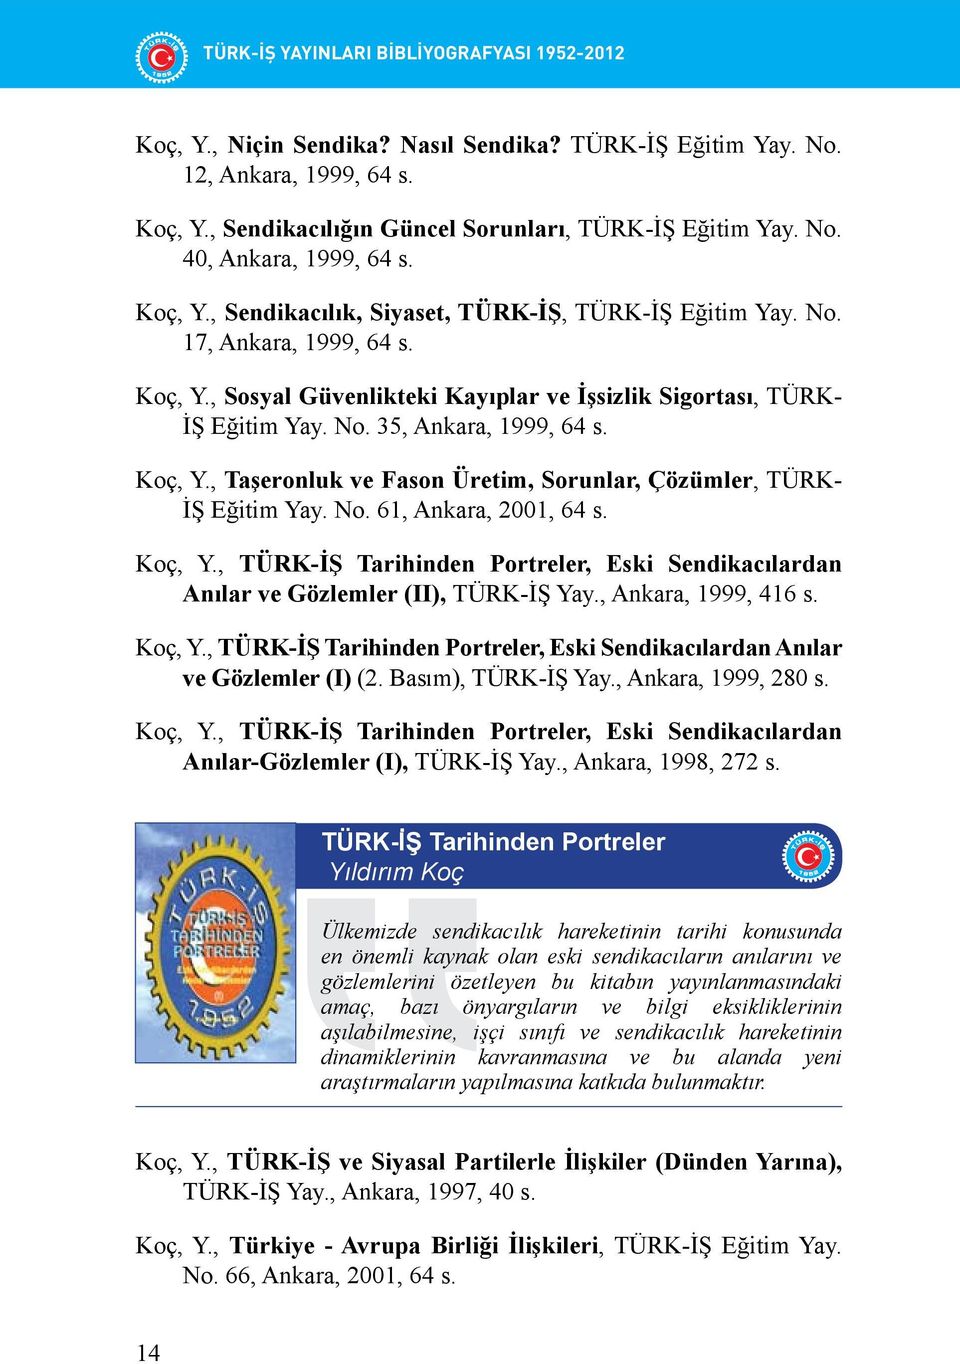 Koç, Y., Taşeronluk ve Fason Üretim, Sorunlar, Çözümler, TÜRK- İŞ Eğitim Yay. No. 61, Ankara, 2001, 64 s. Koç, Y.